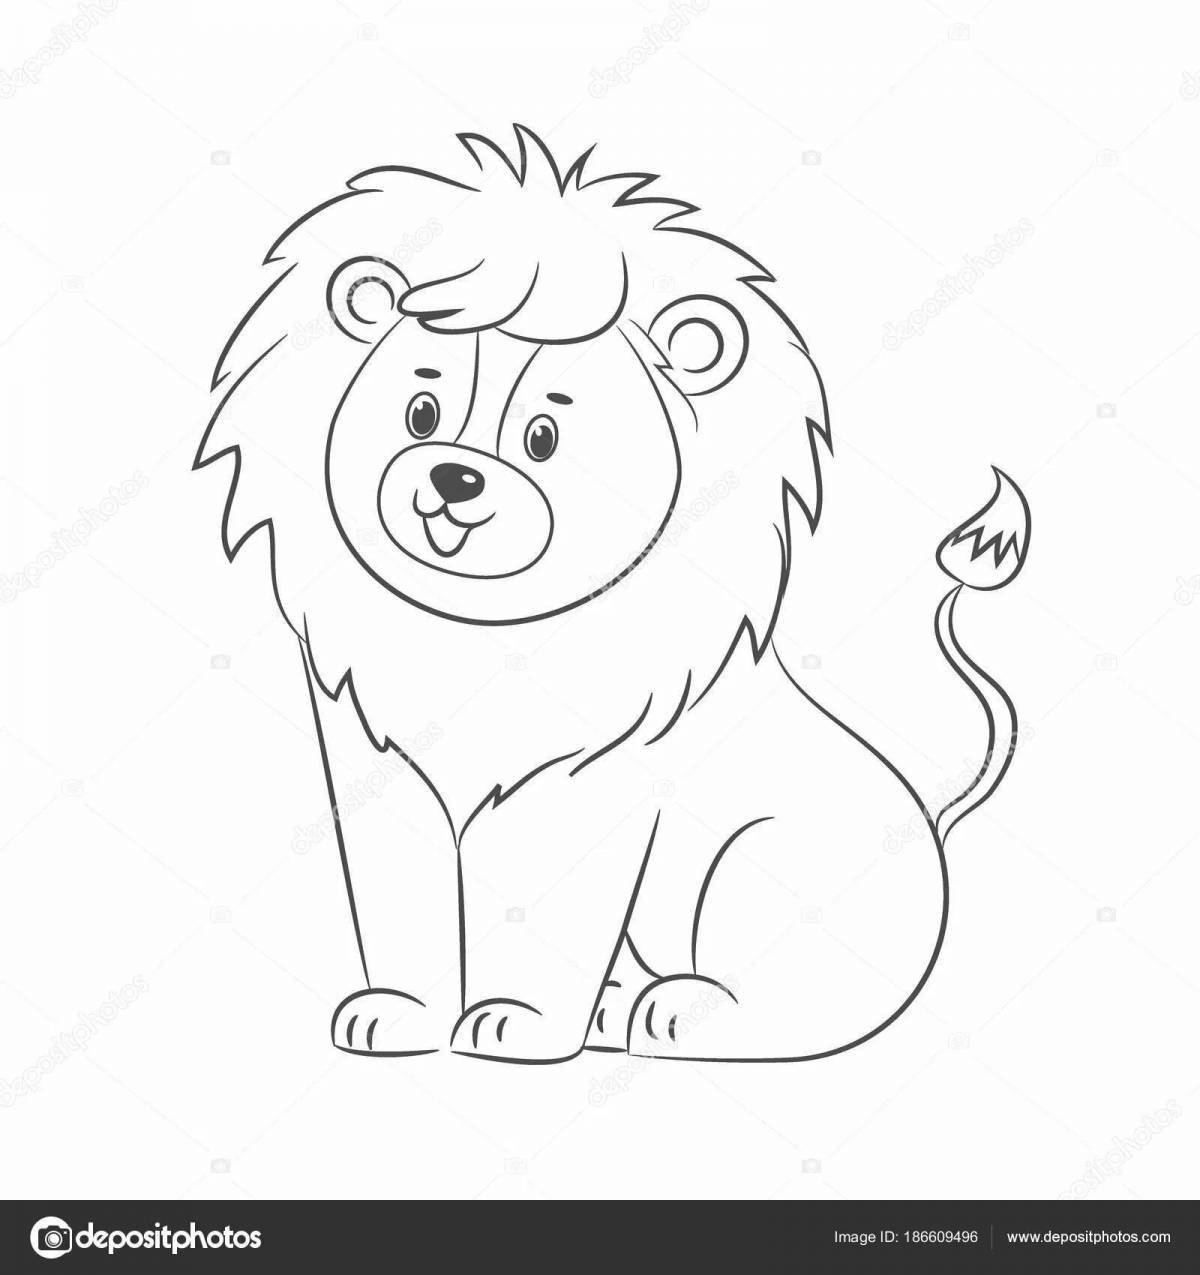 Children coloring lion cub